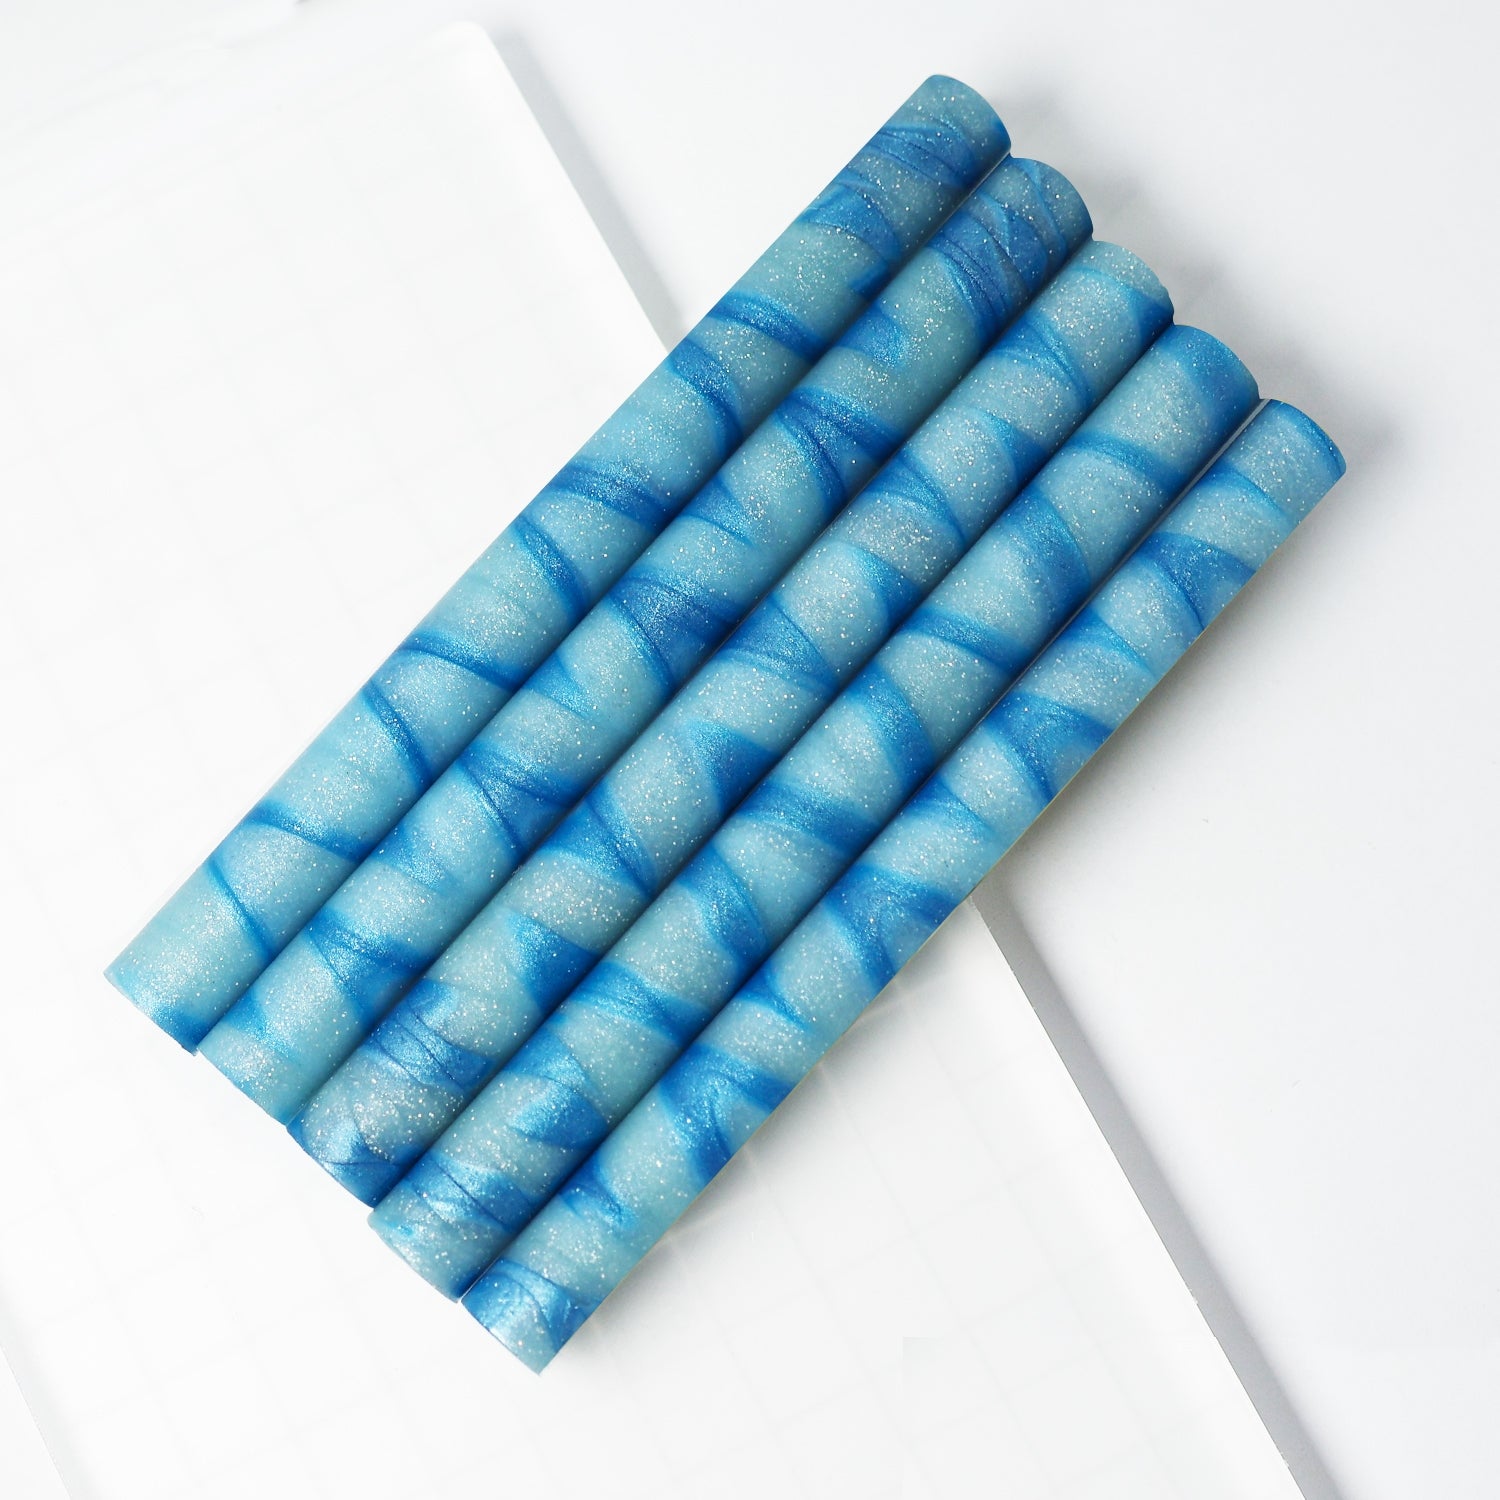 Sealing Wax - Vintage Lolipop Mixed Color Glue Gun Wax Sticks - Mixed Blue